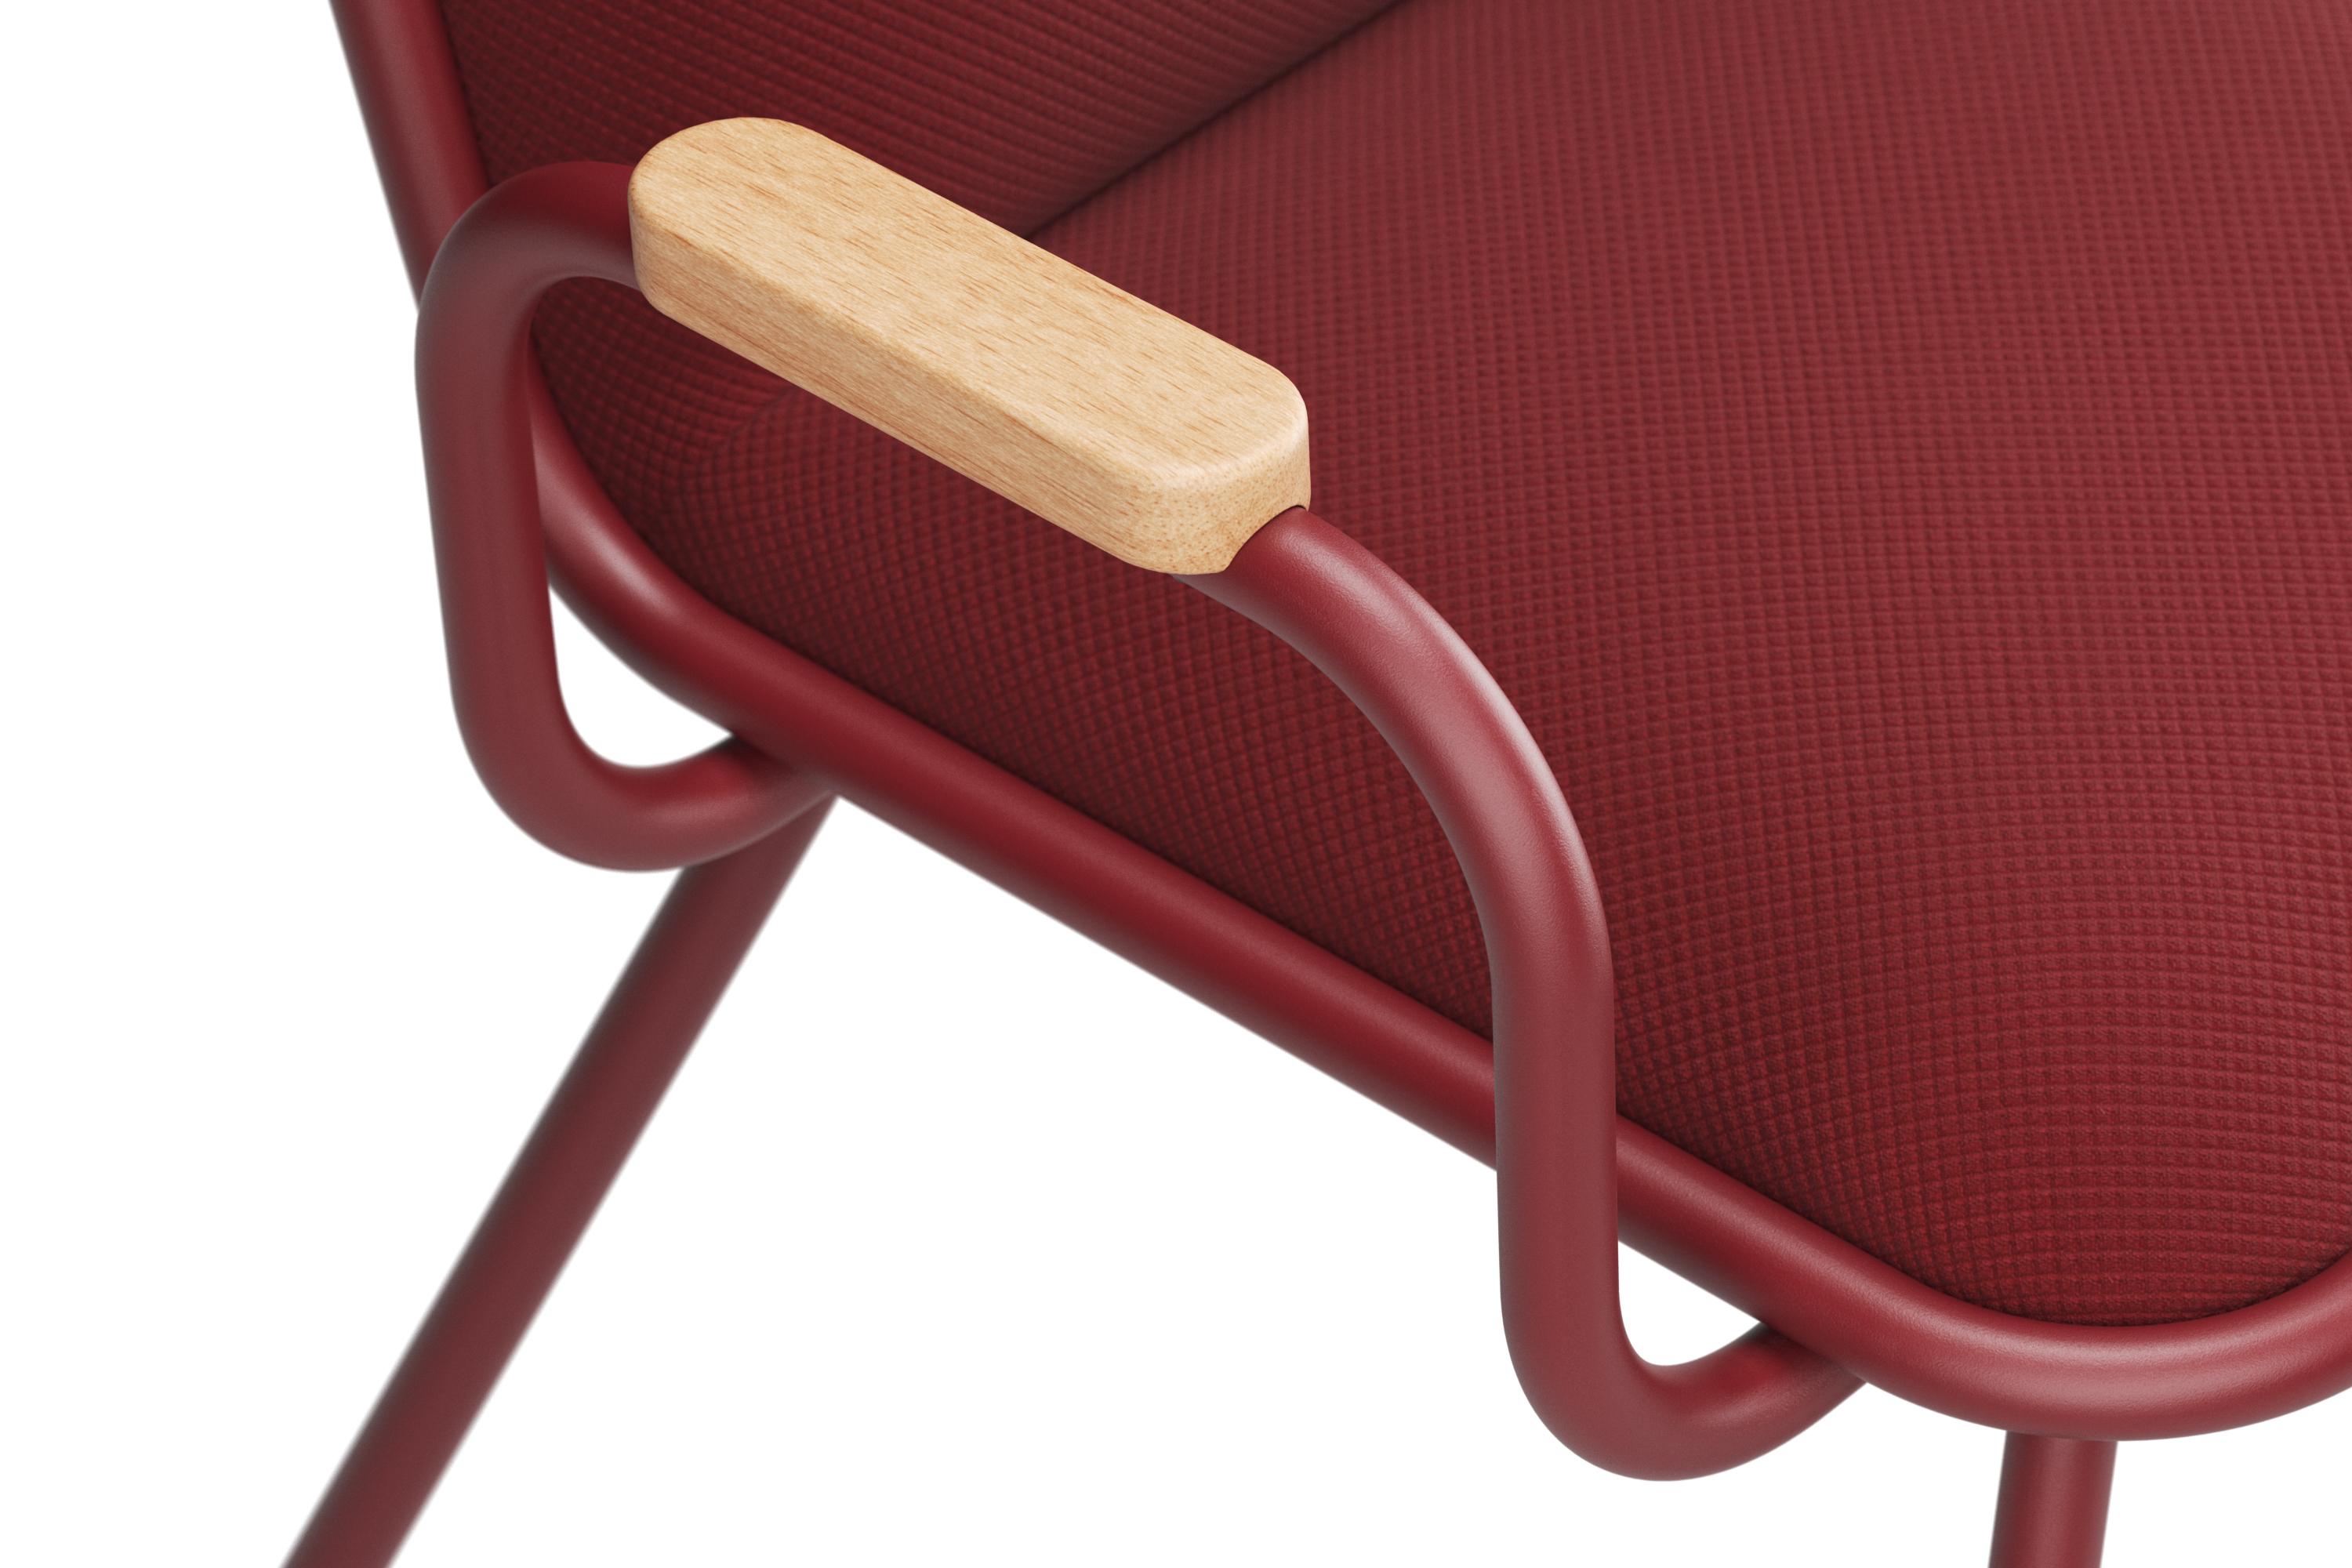 Der Dulwich-Stuhl mit Armlehnen ist eine Weiterentwicklung des klassischen Dulwich-Designs. Er bietet mehr Komfort und Halt, ohne seinen zeitlosen Charme zu verlieren. Das Gestell aus pulverbeschichtetem Metall bietet eine robuste Grundlage, während